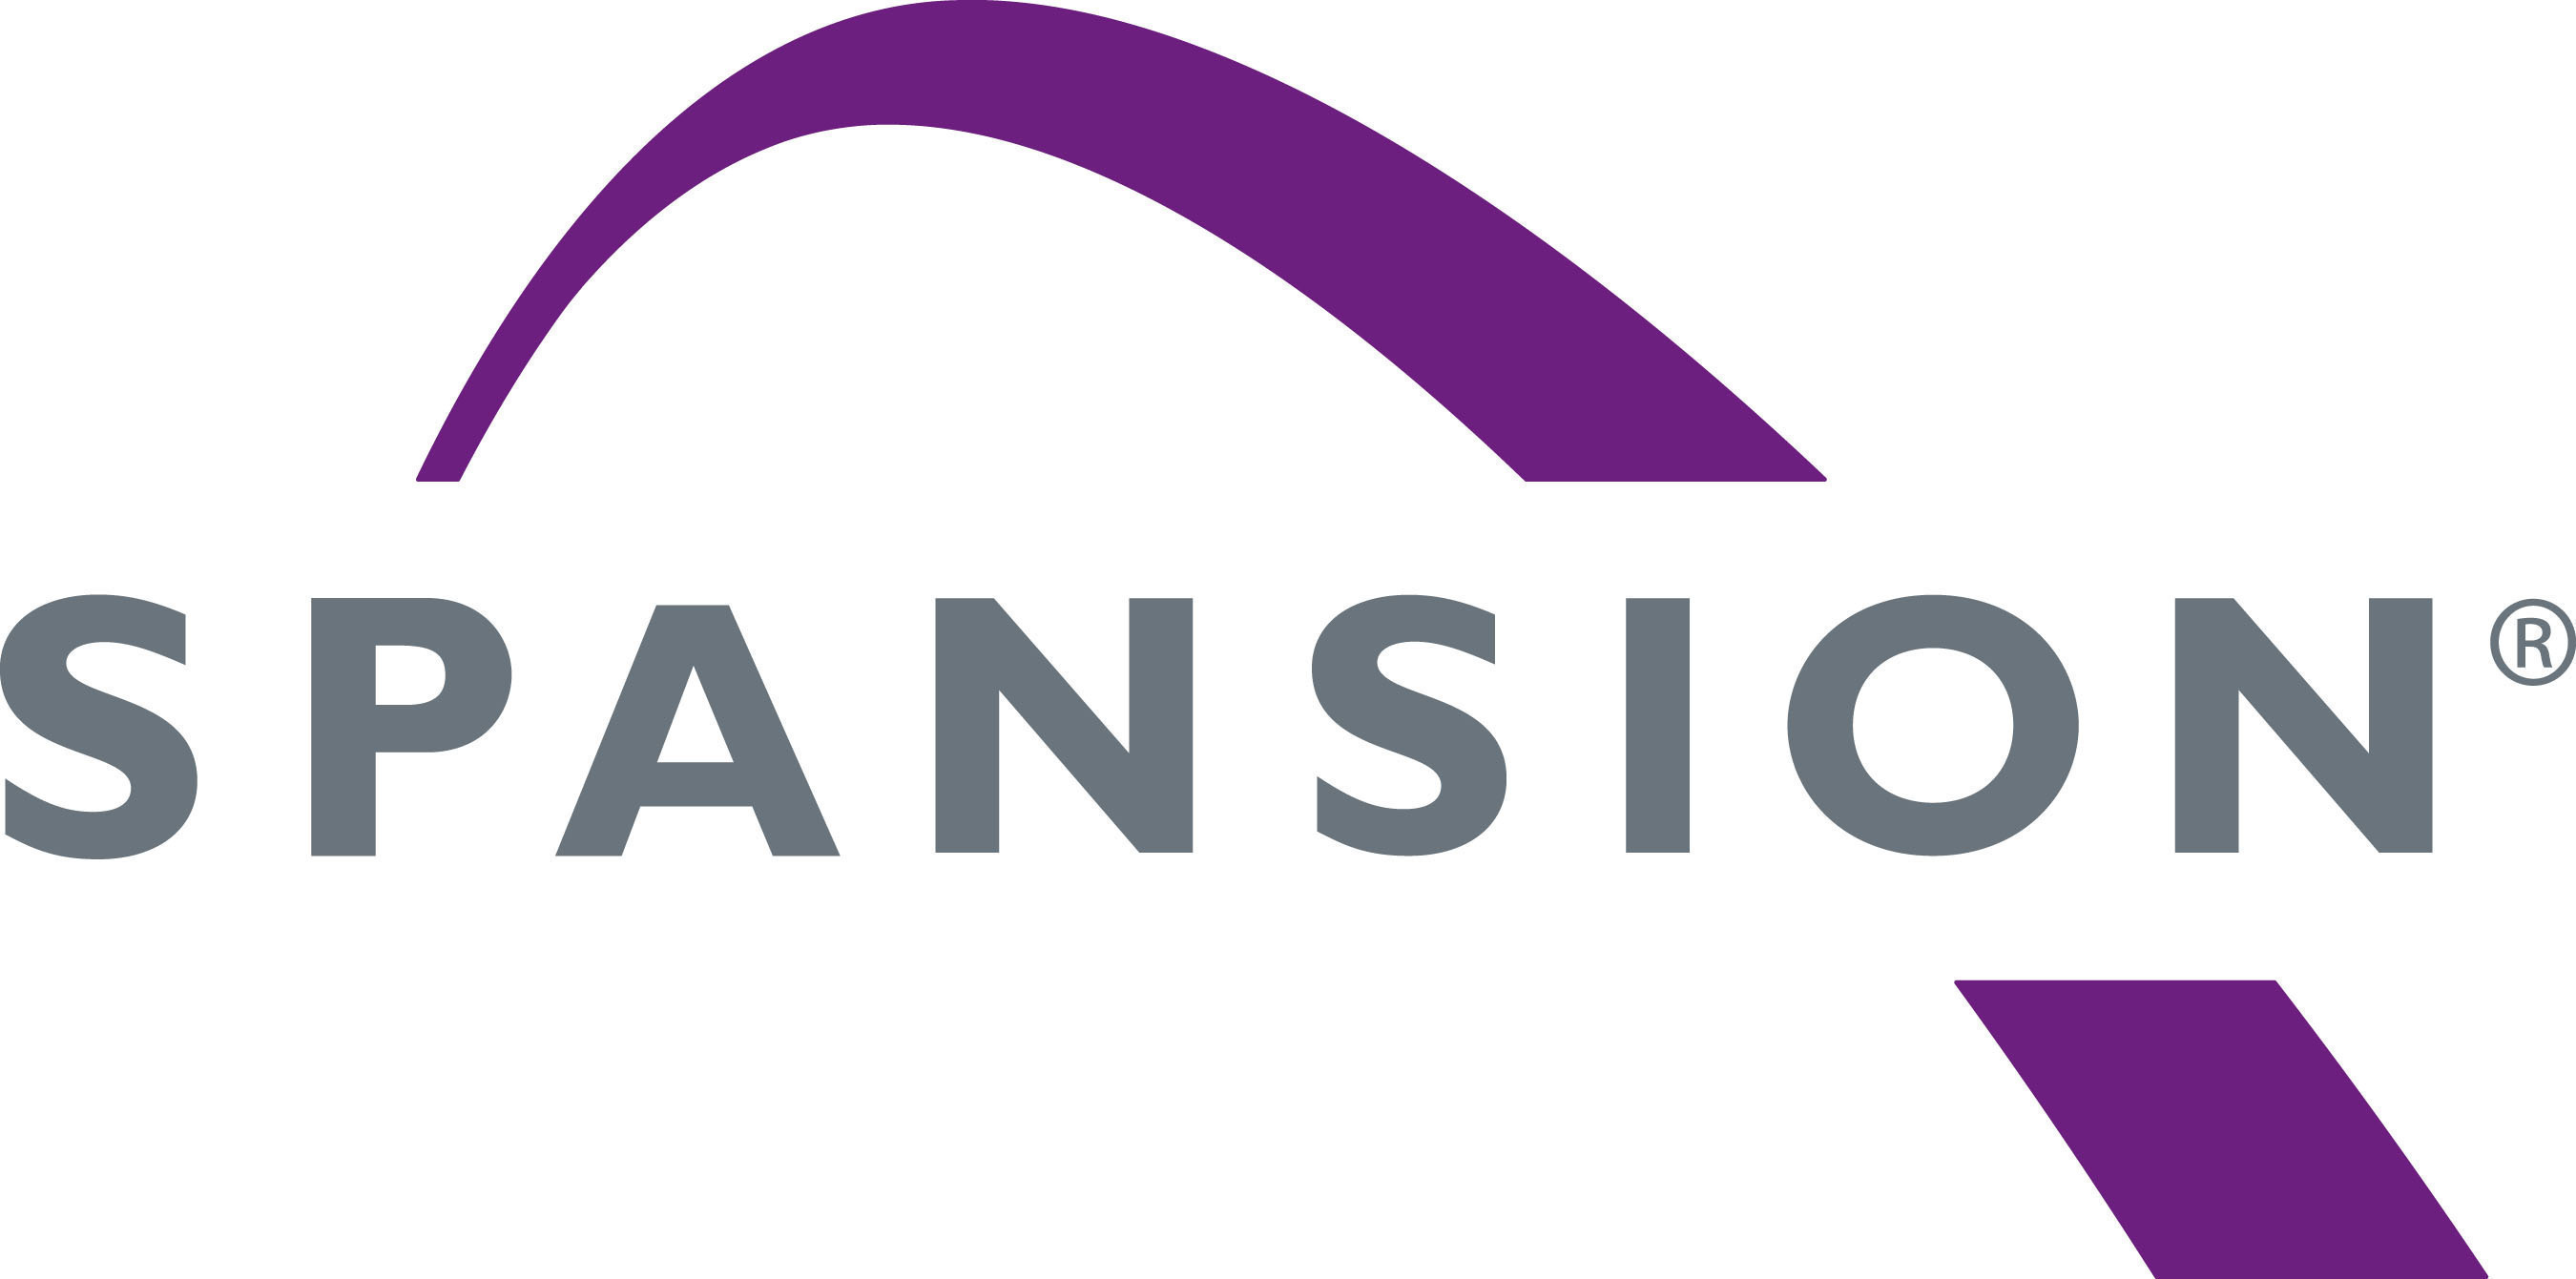 Spansion logo.